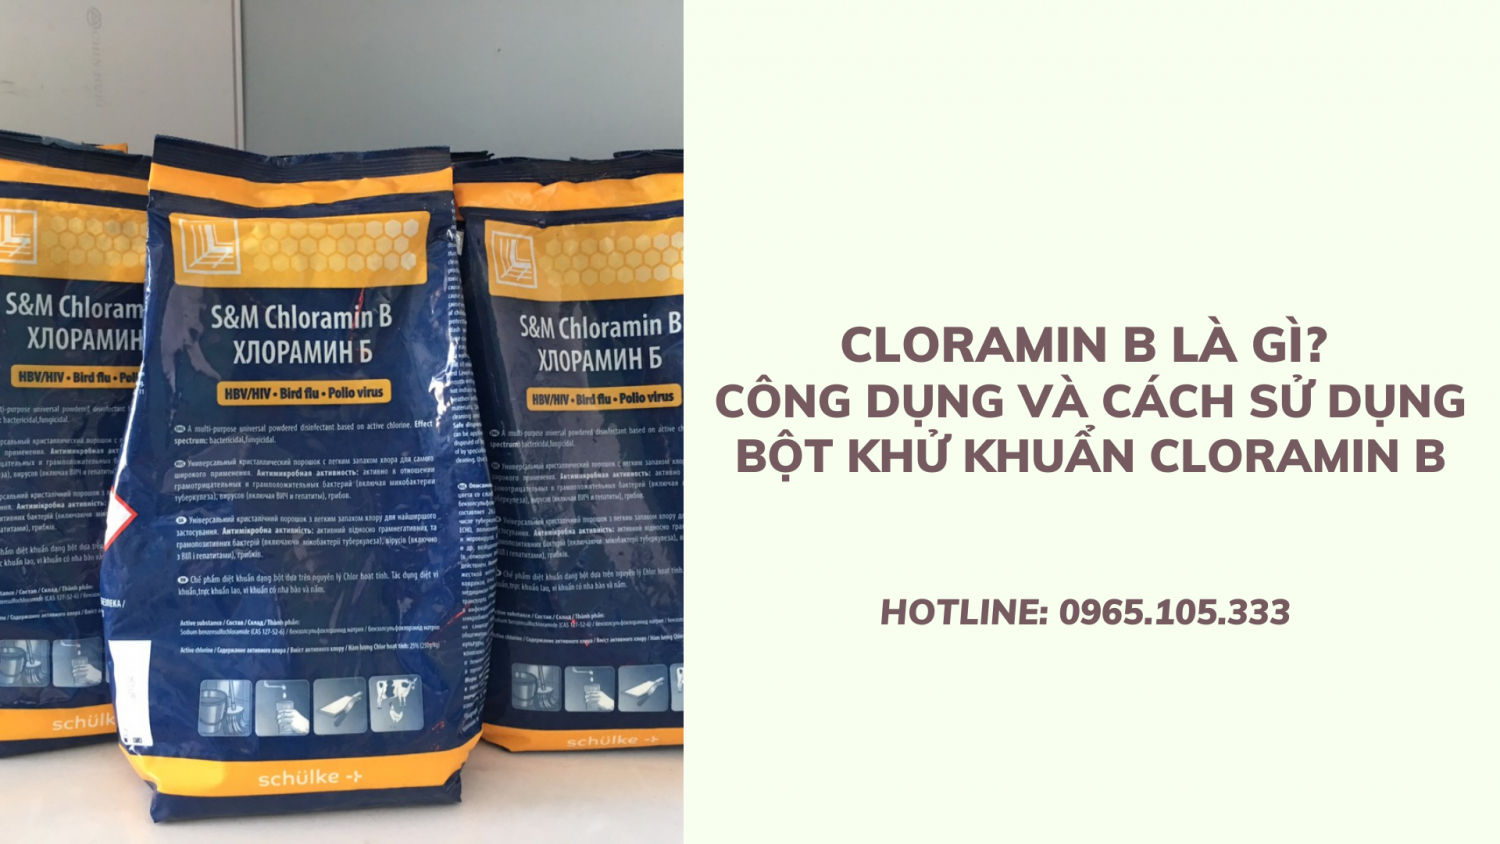 Cloramin B là gì? Công dụng và cách sử dụng bột khử khuẩn Cloramin B